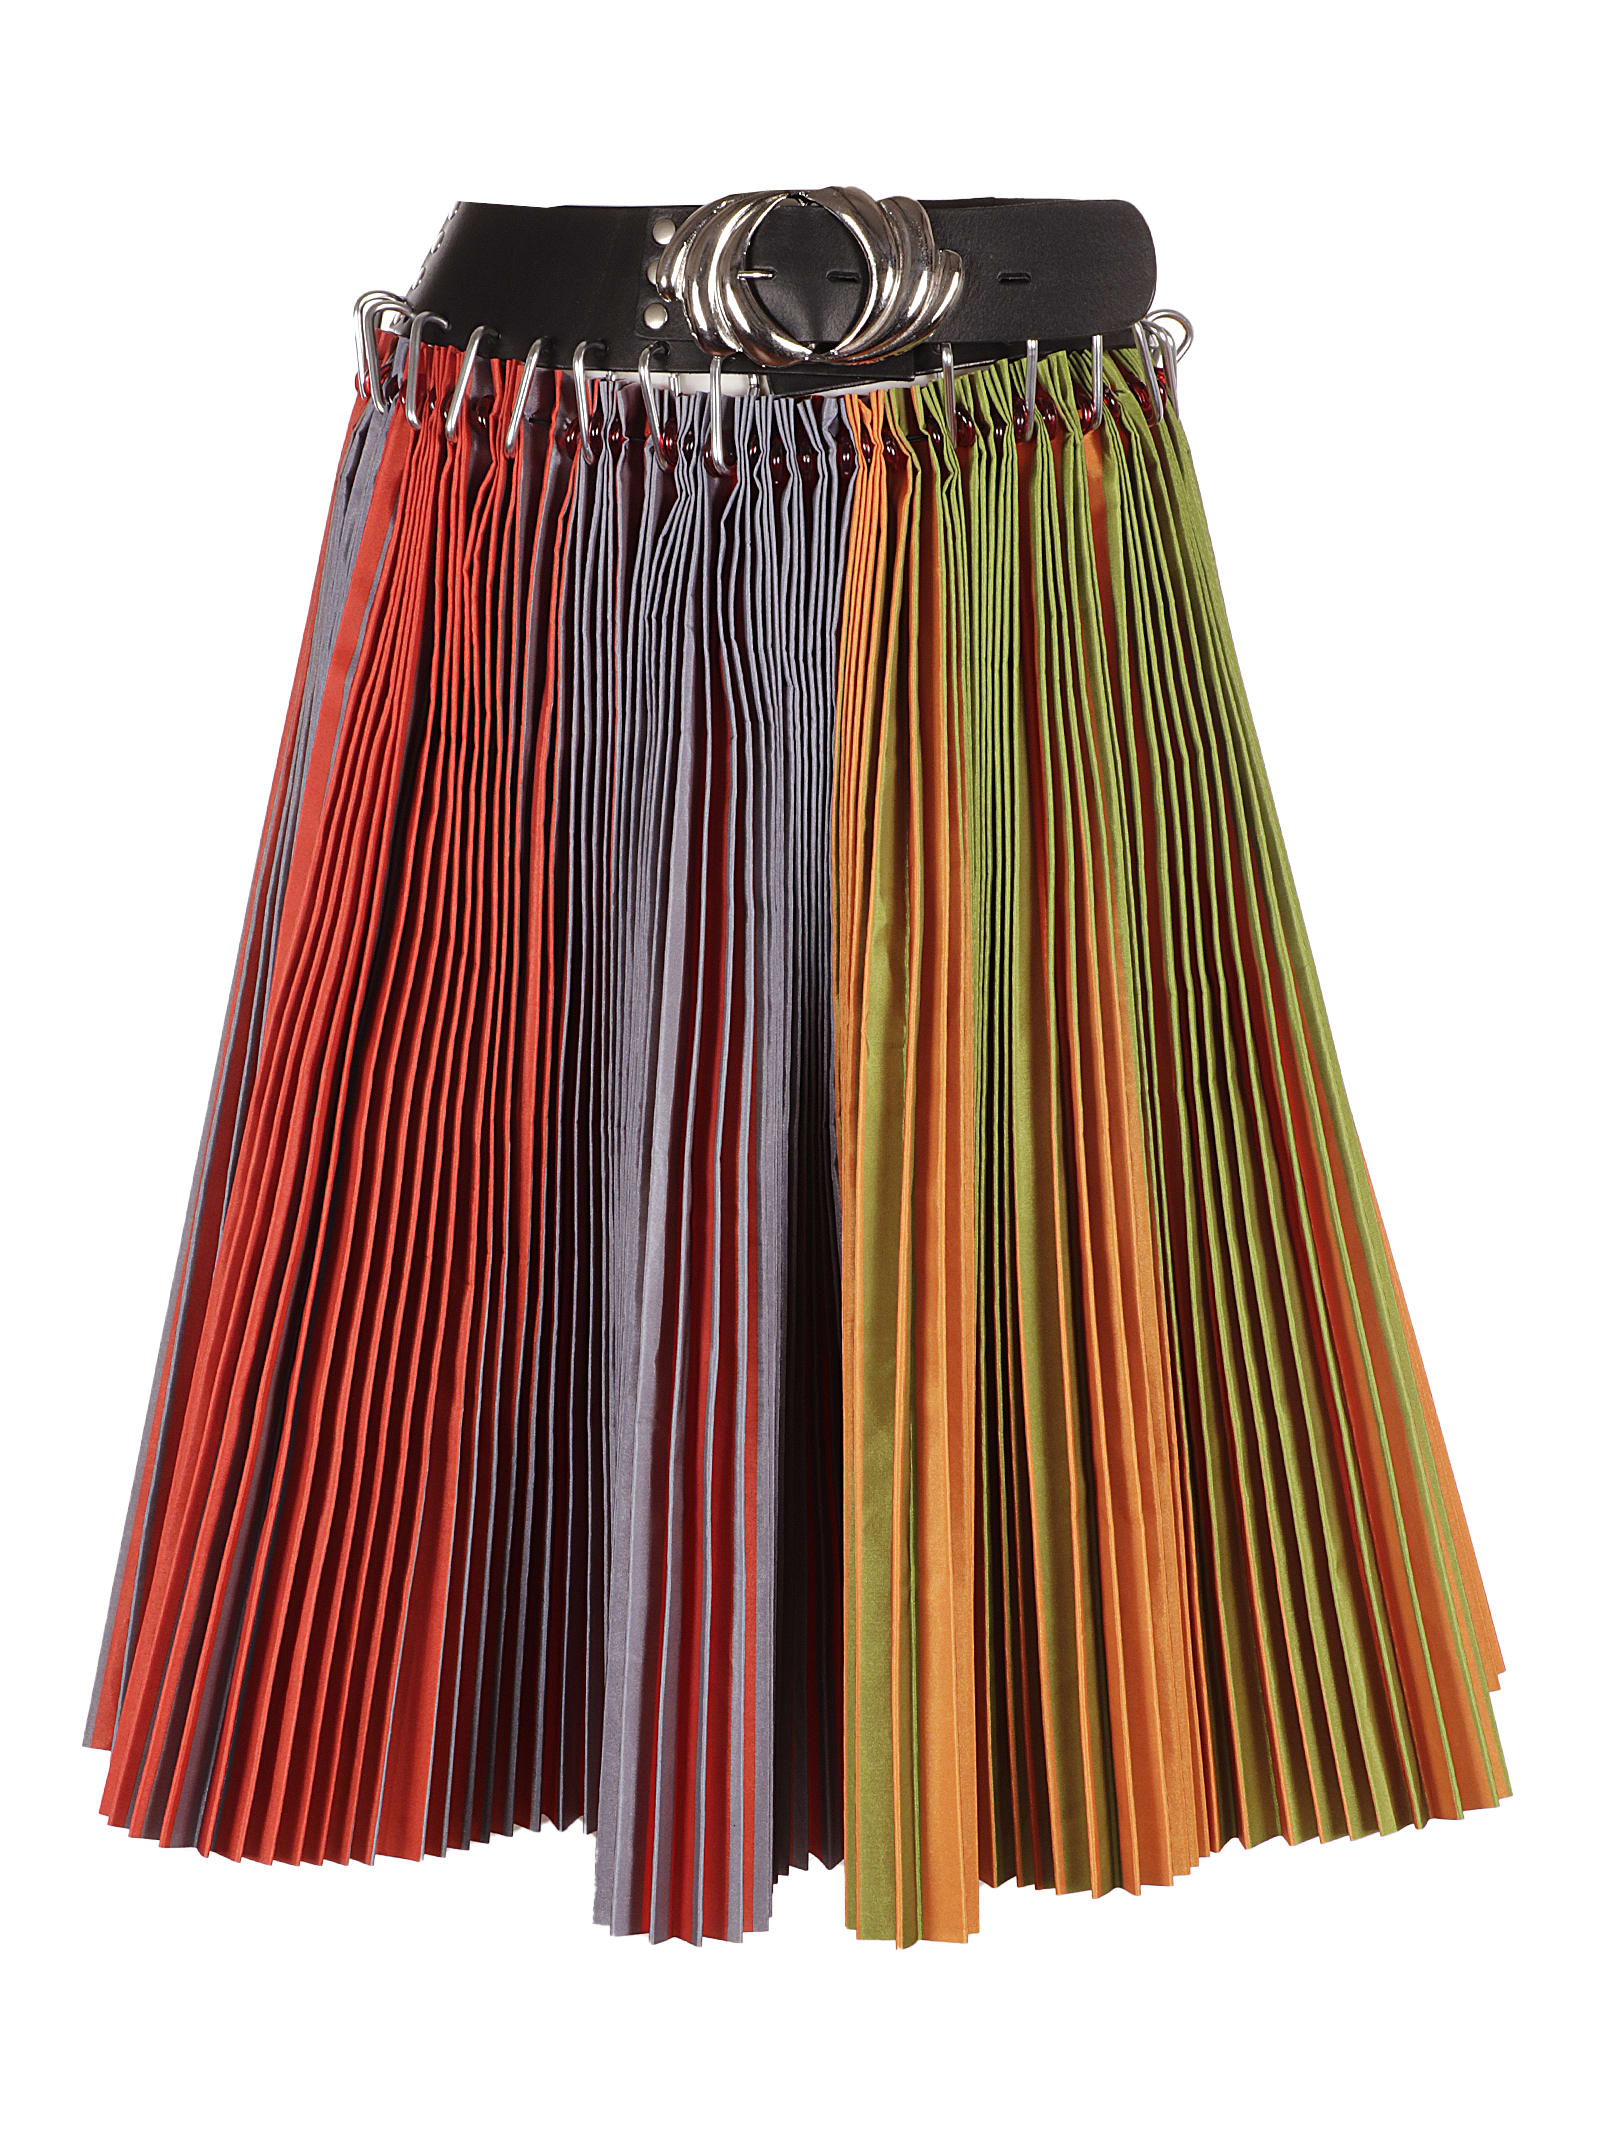 Chopova Lowena Pleated Poly Skirt